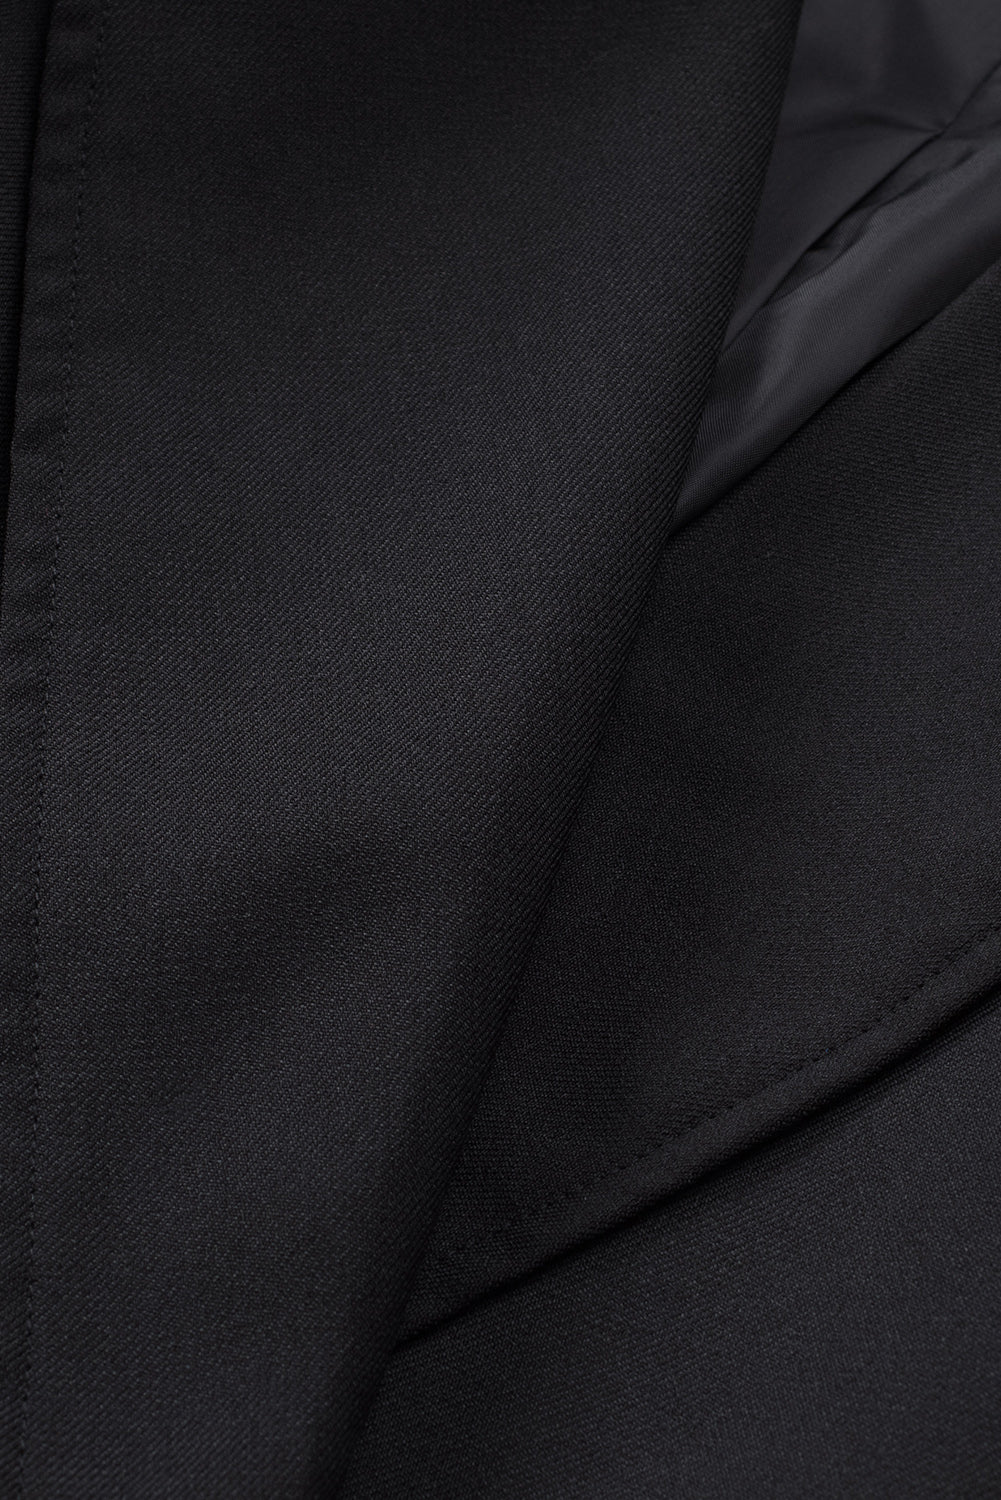 Blazer nero con colletto revers abbottonato e tasca